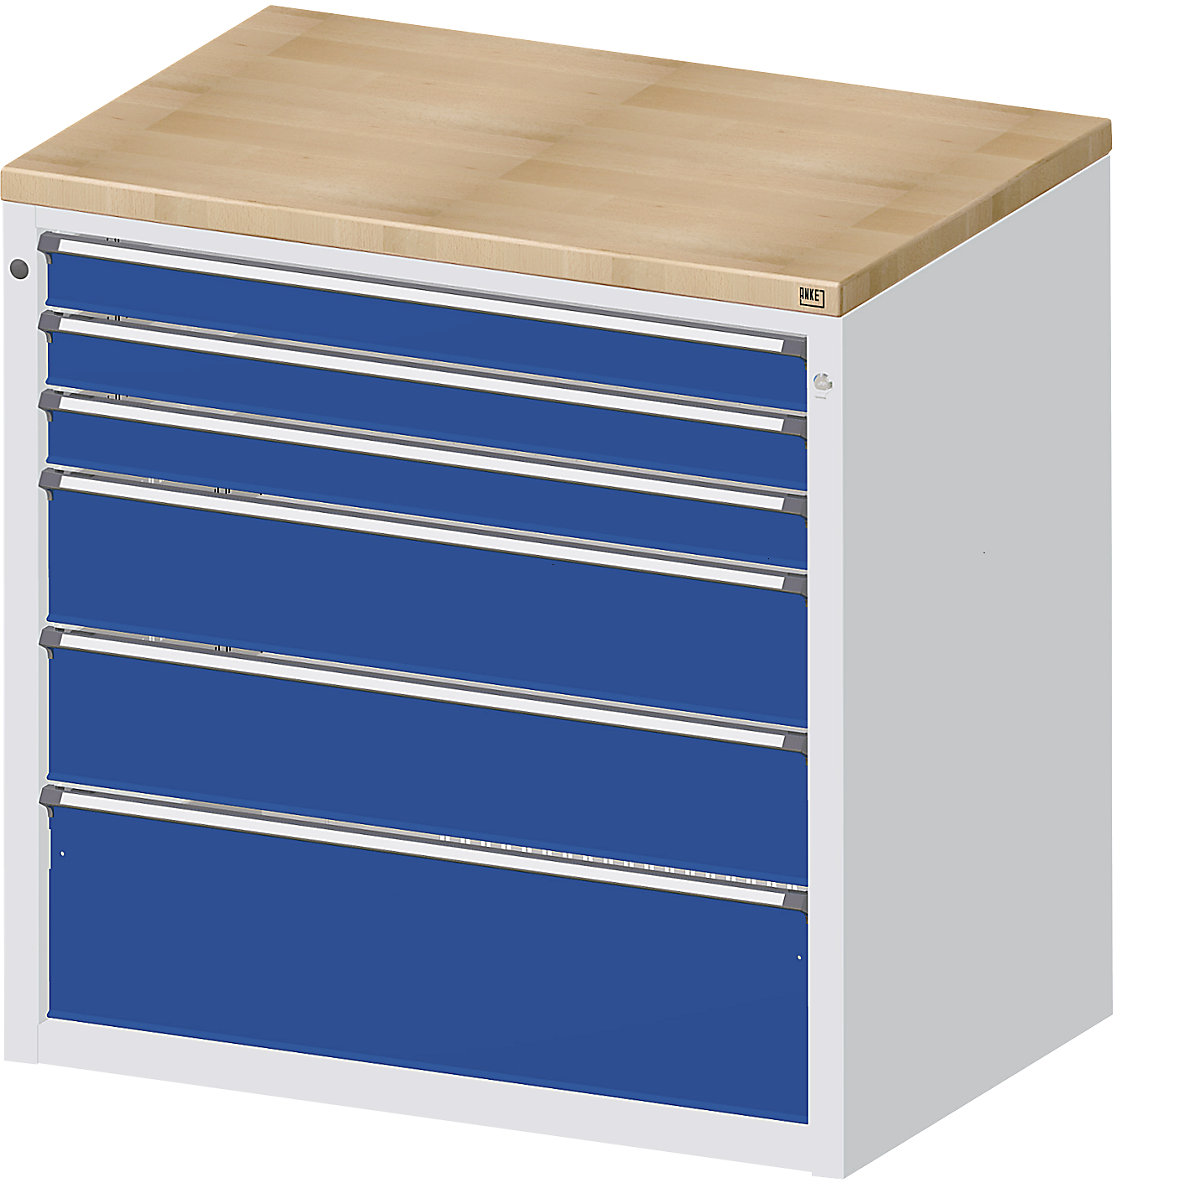 Dulap pentru banc pentru distribuția materialelor și a uneltelor – ANKE, 3 sertare 90 mm, 2 sertare 180 mm, 1 sertar 270 mm, gri / albastru-1